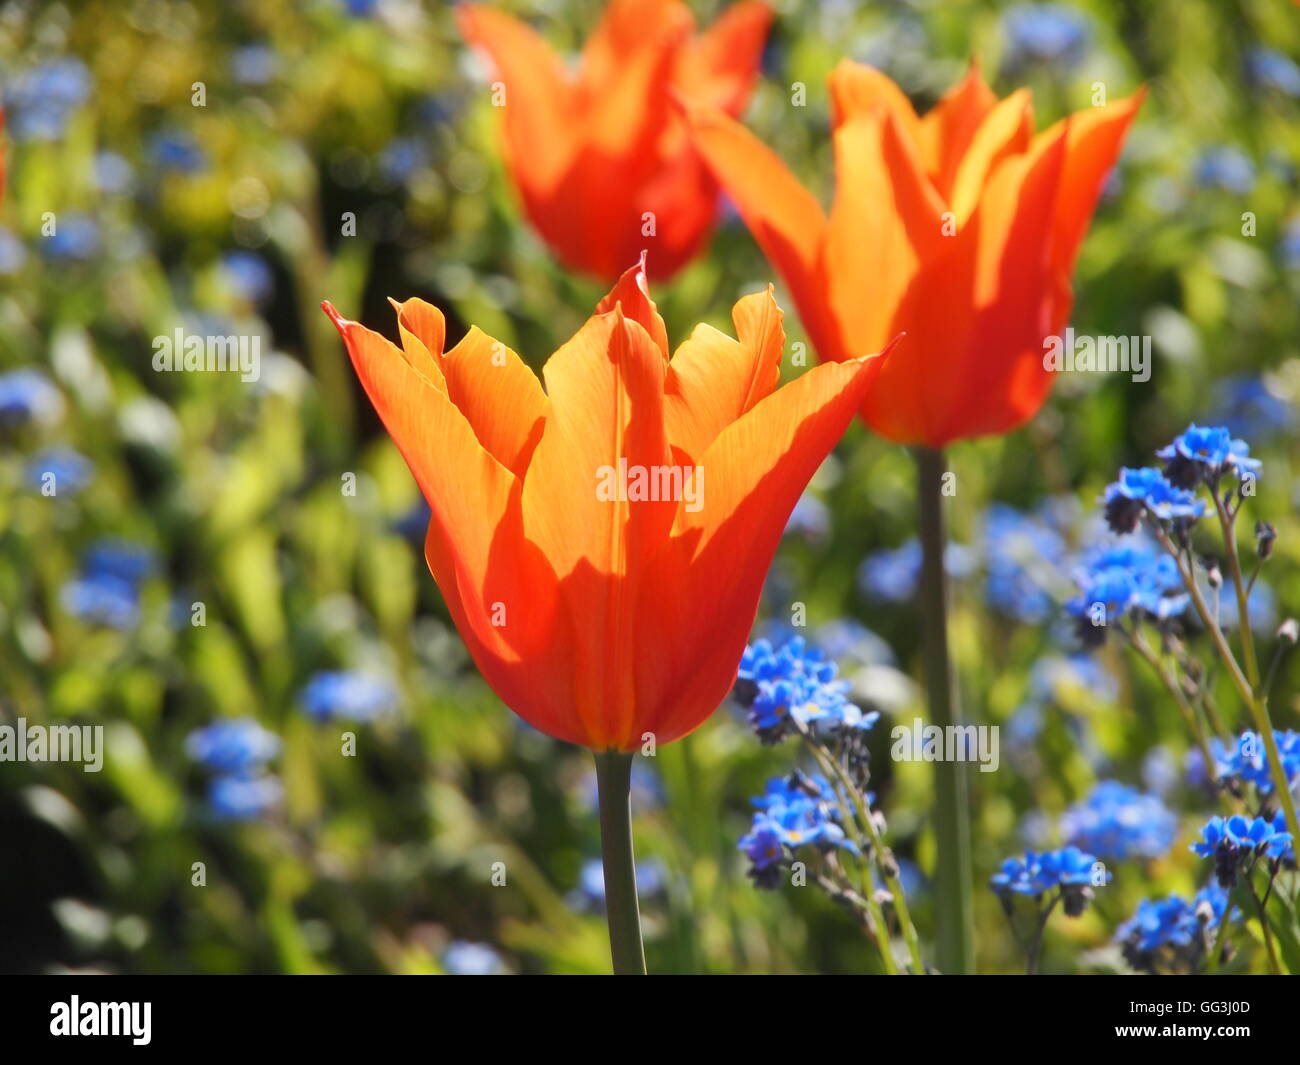 Schöne, beleuchtete "Ballerina" Tulpen im Chenies Manor im April Sonnenschein. Lebendige orange Tulpen und blauen Myosotis, Vergissmeinnicht Stockfoto